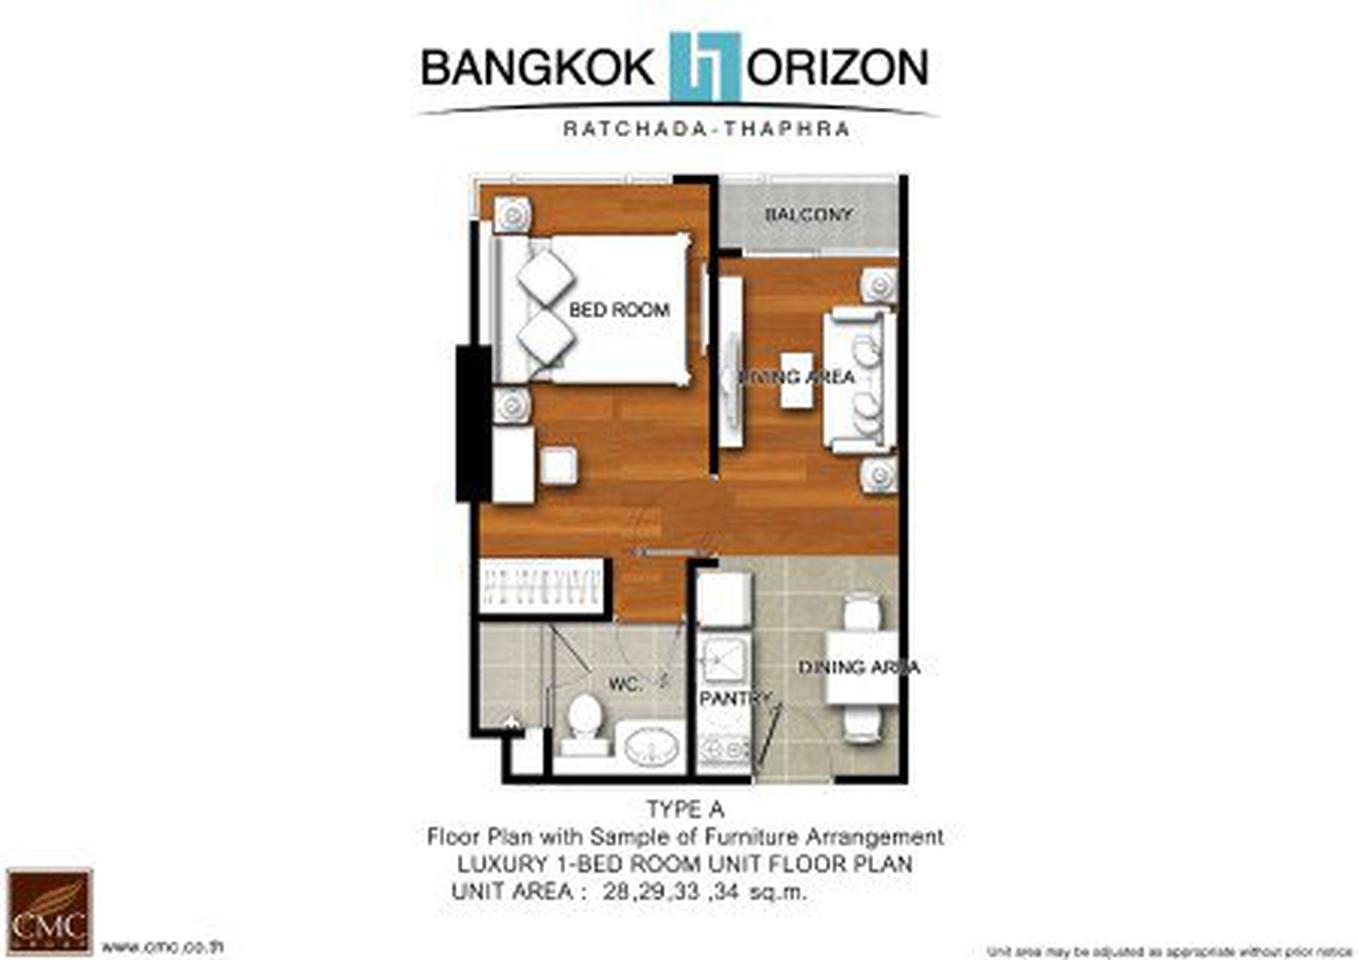 ขาย คอนโด ชั้นสูง วิวสวย เฟอร์SB ใหม่ครบ Bangkok Horizon รัชดา-ท่าพระ 32.80 ตรม. 1 ห้องนอน ราคาดีลพิเศษสุด ถูกสุด รูปเล็กที่ 3